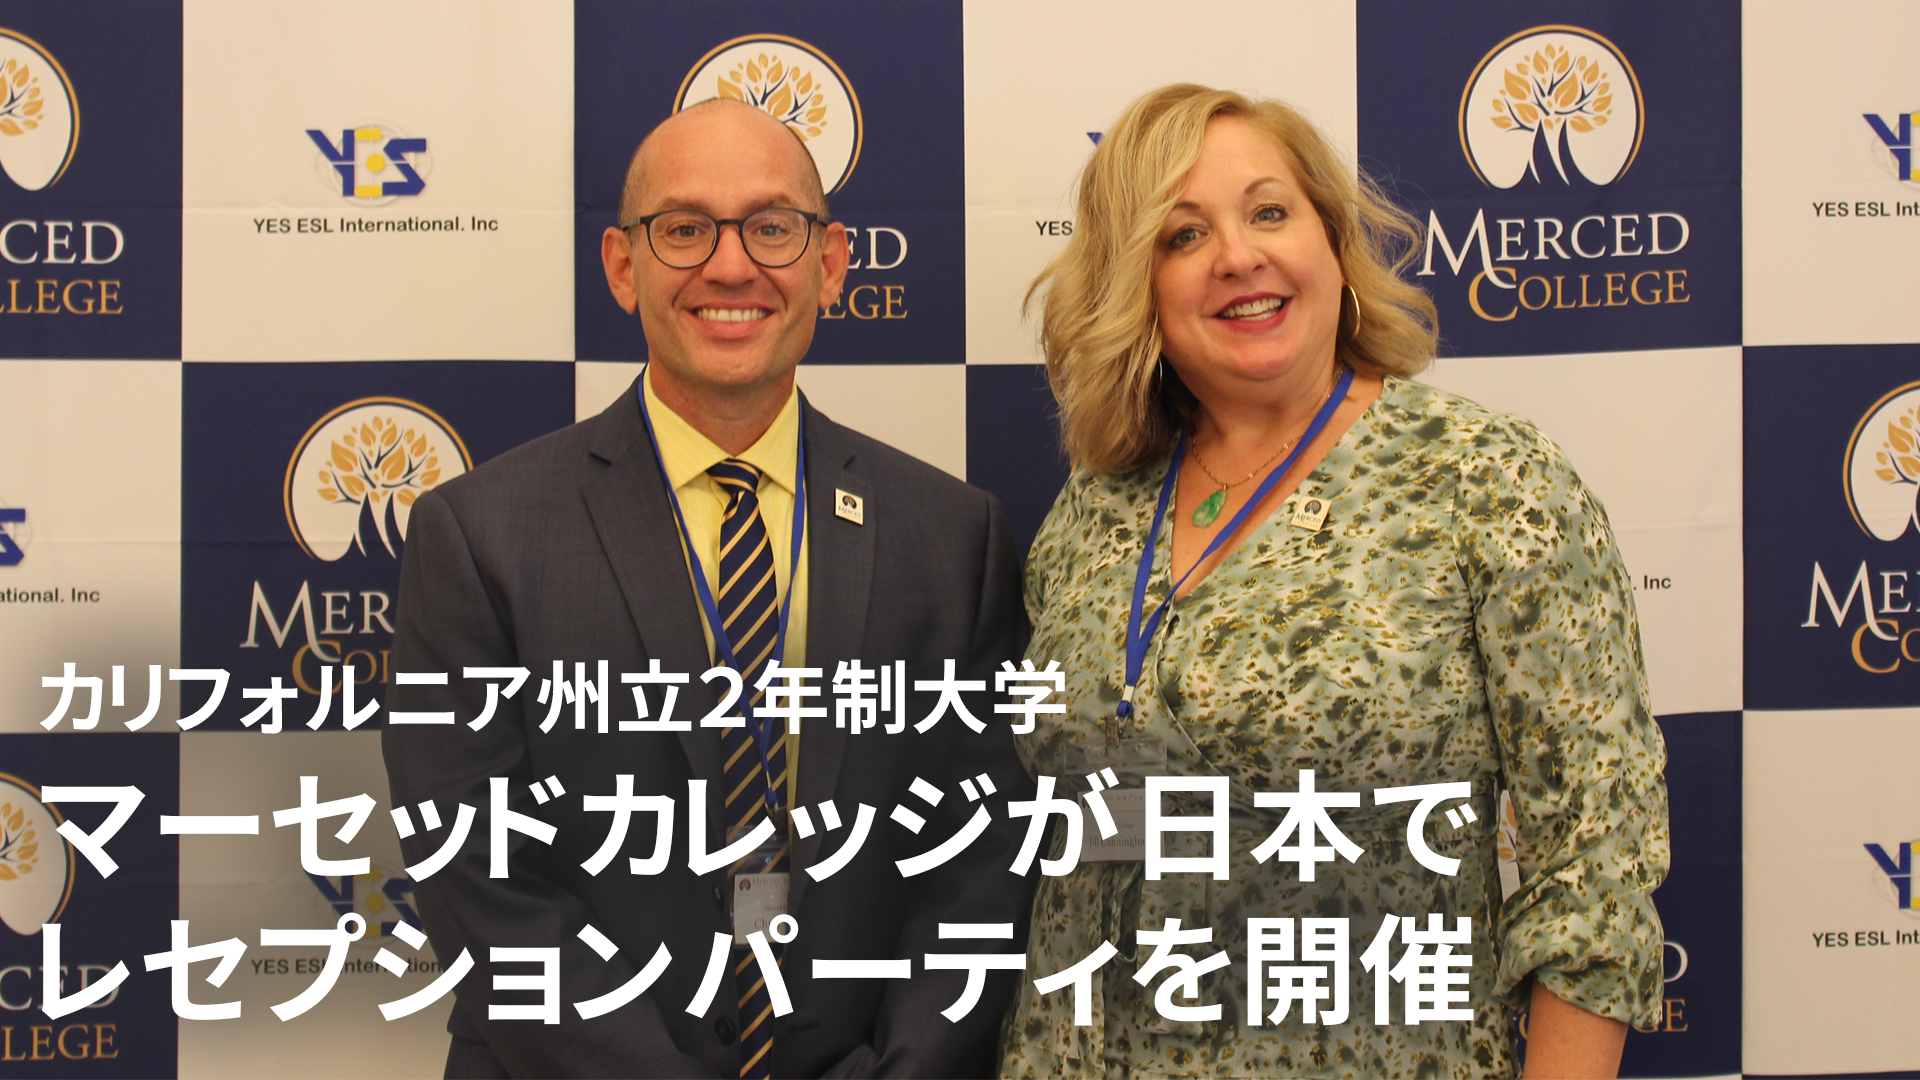 グローバル教育を見据え、カリフォルニア州立2年制大学が
日本でレセプションパーティを10月3日に開催 – Net24